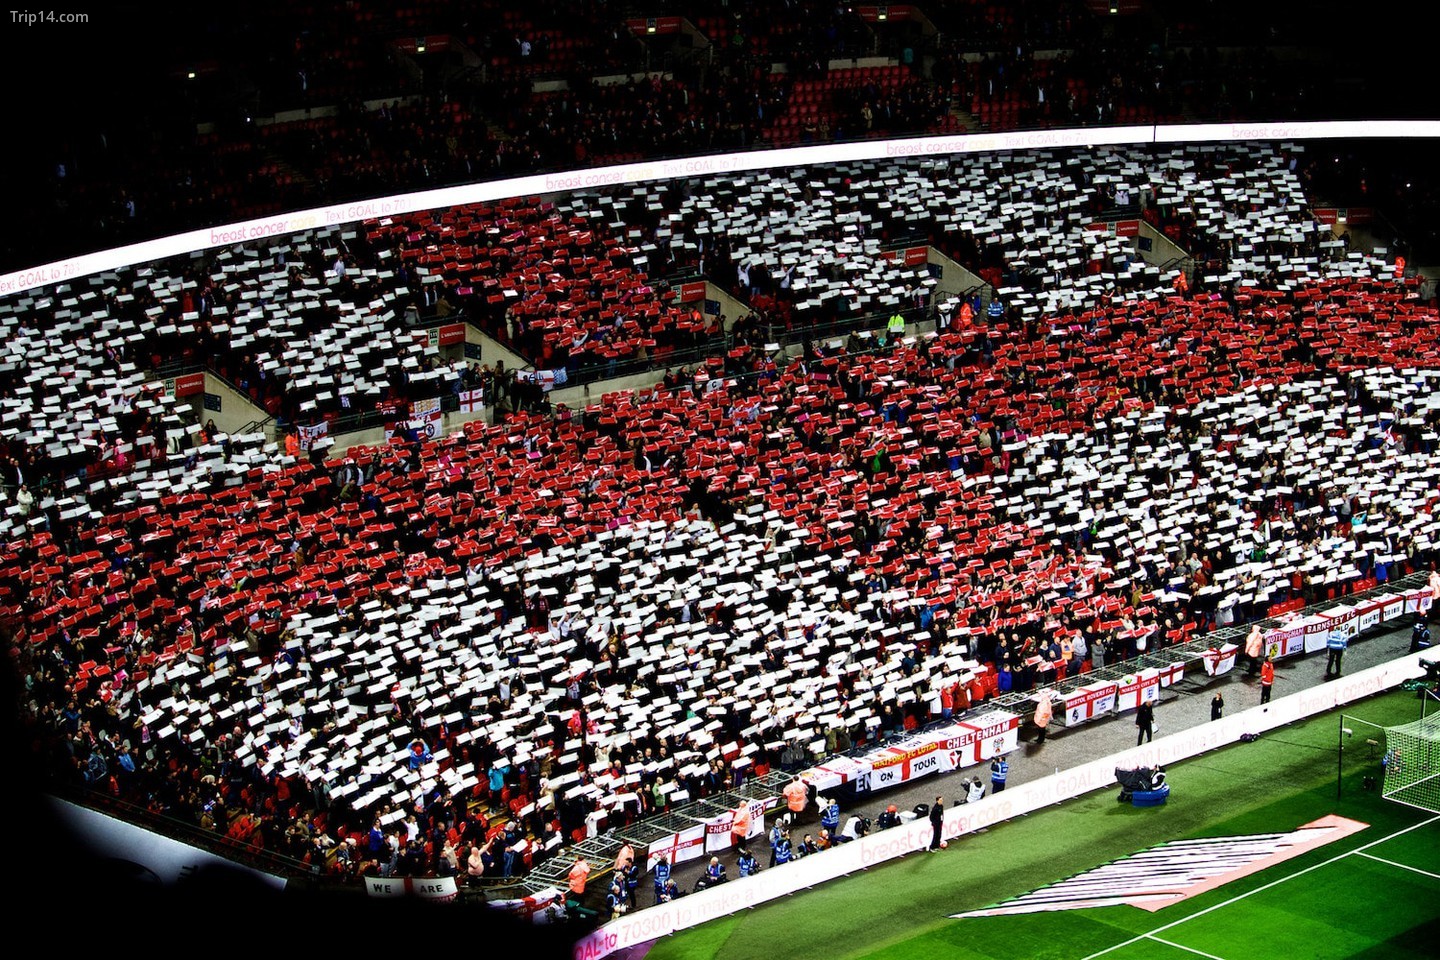  Thánh giá St George là biểu tượng niềm tự hào của nhiều người hâm mộ bóng đá Anh   |   